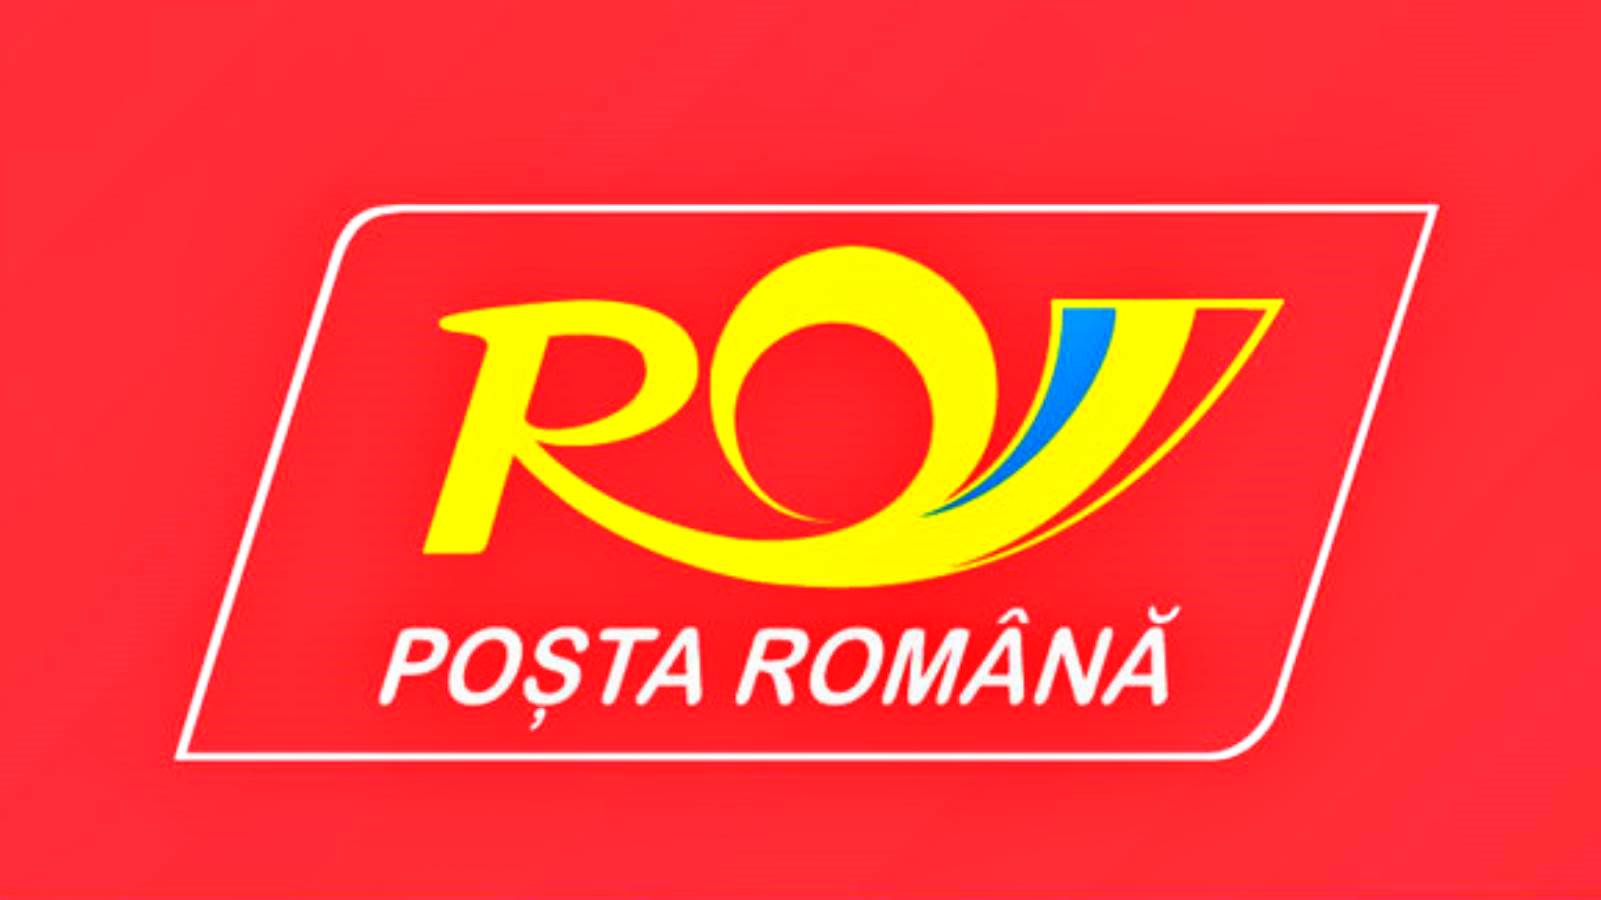 3.000 Cutii Postale Digitale Cumparate Posta Romana